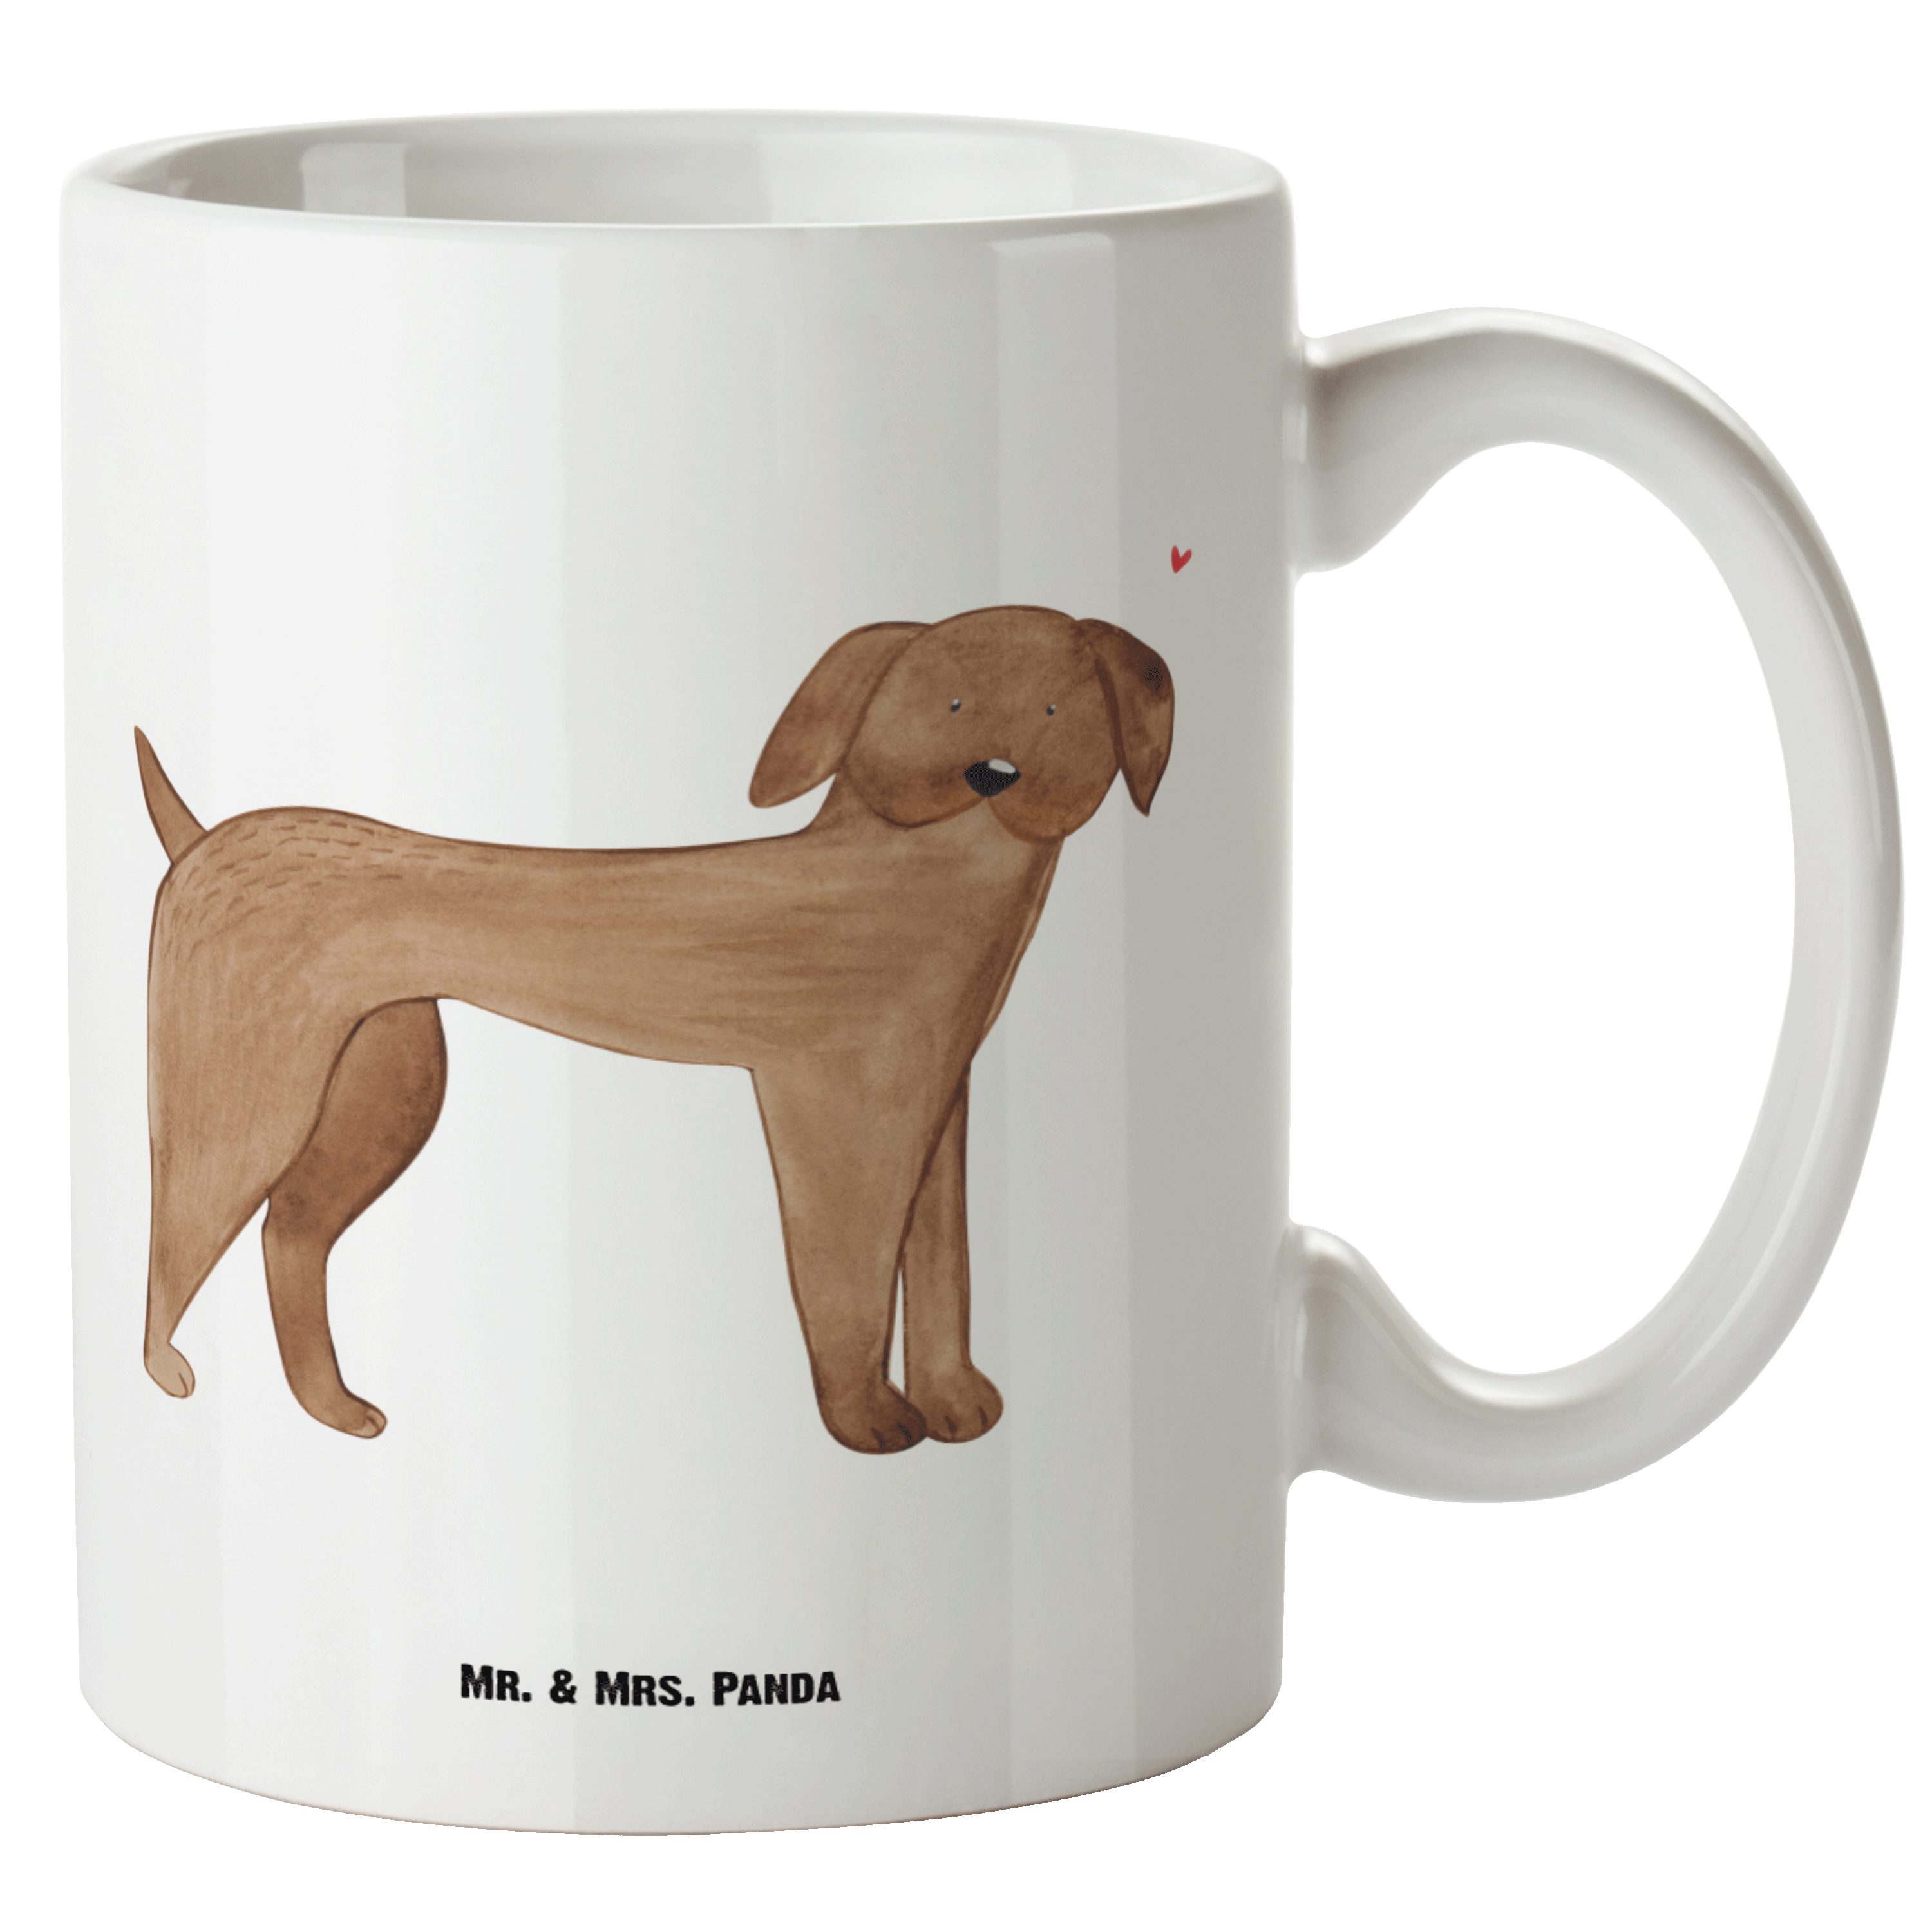 Mr. & Mrs. Panda Tasse Hund Dogge - Weiß - Geschenk, Tierliebhaber, Deutsche Dogge, XL Beche, XL Tasse Keramik